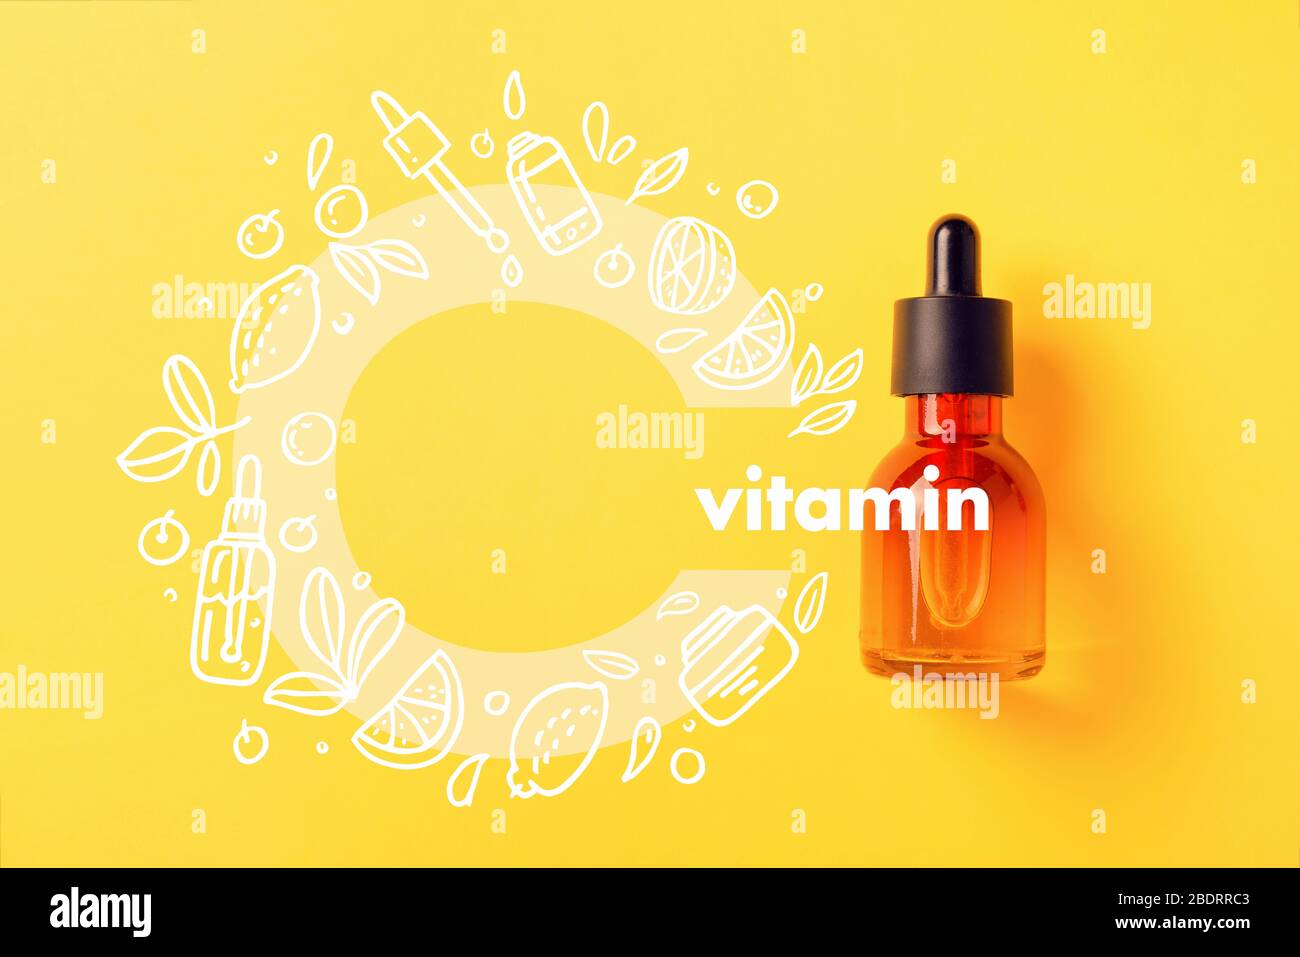 Bottiglia di vetro per cosmetici, sieri e oli con vitamina C su sfondo giallo immagine con icone stile Doodle immagine piatto Foto Stock